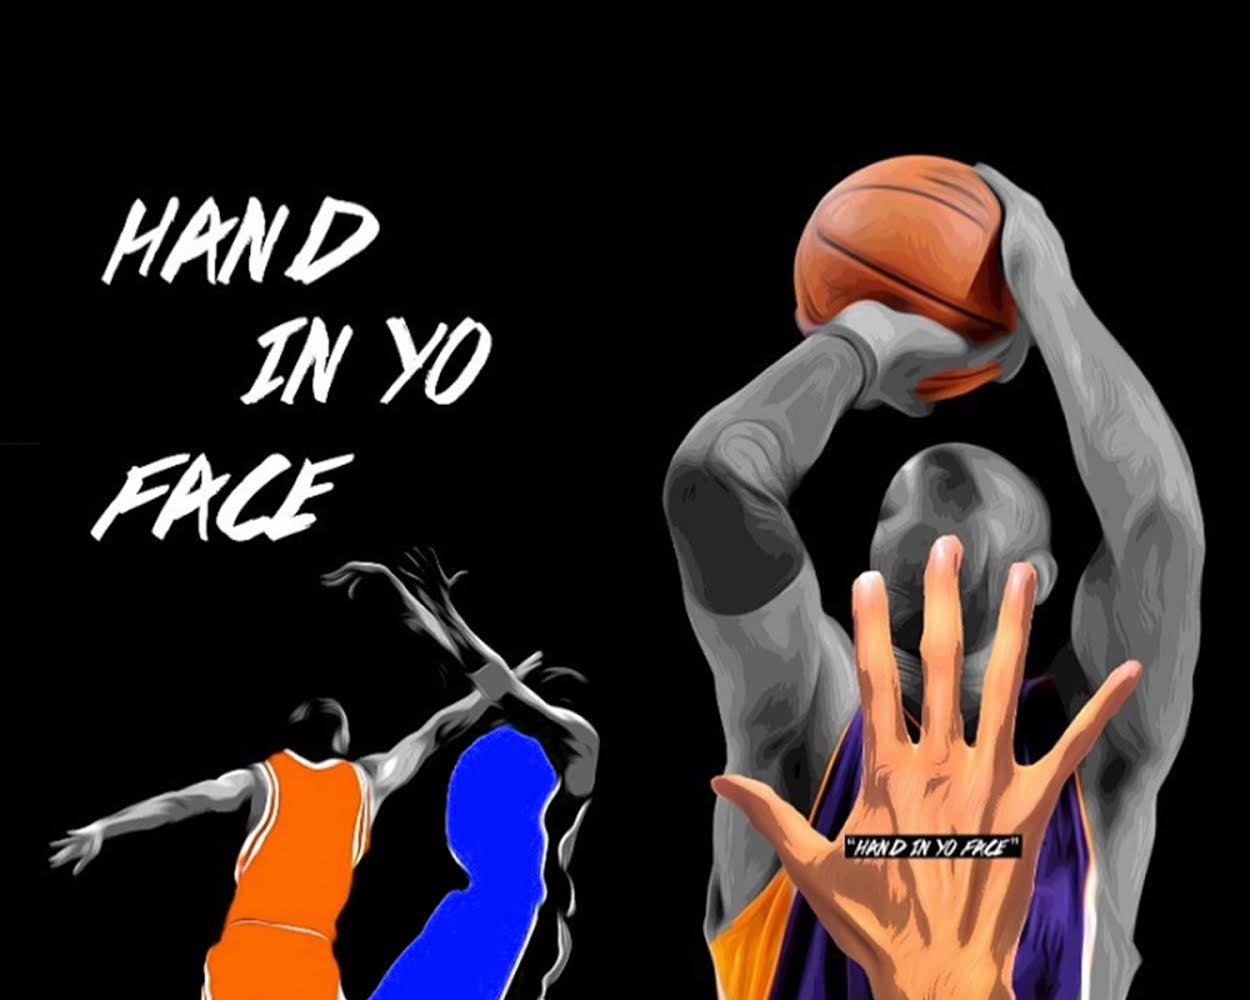 HAND IN YO FACE